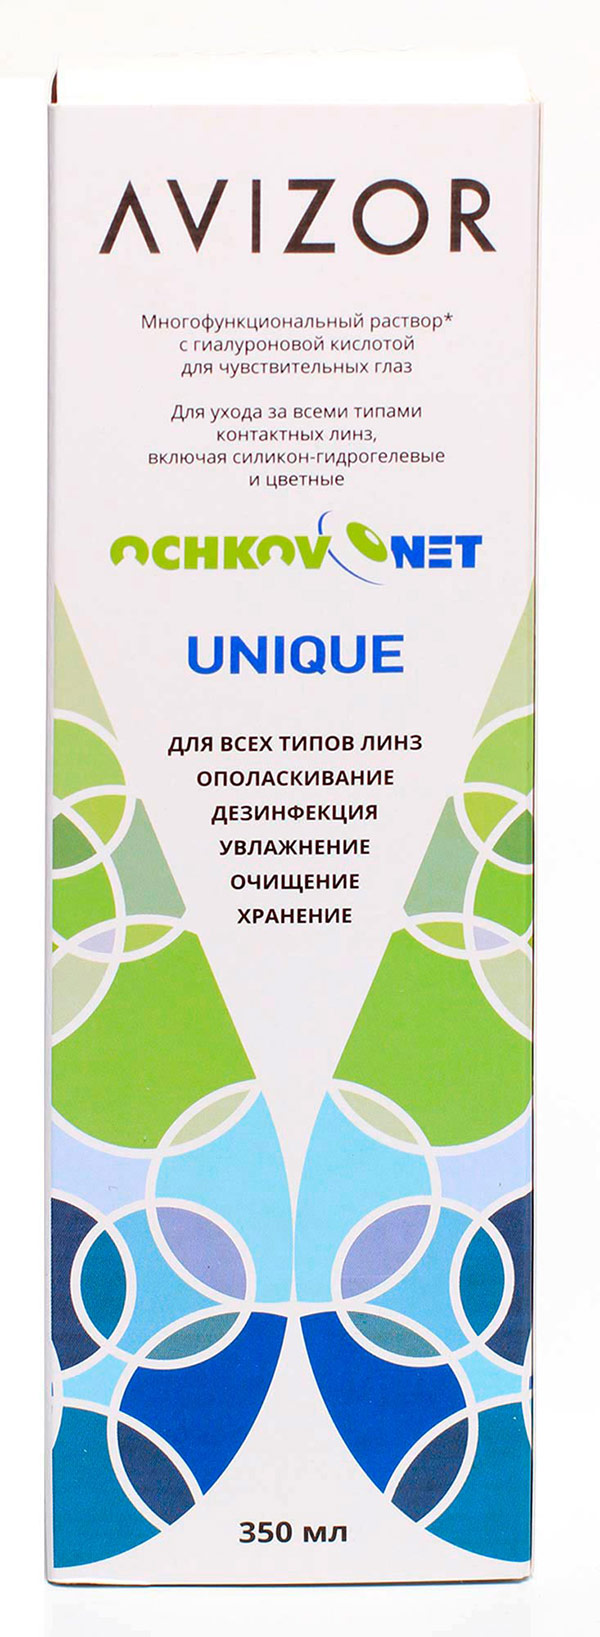 Ochkov.Net Unique 350 мл